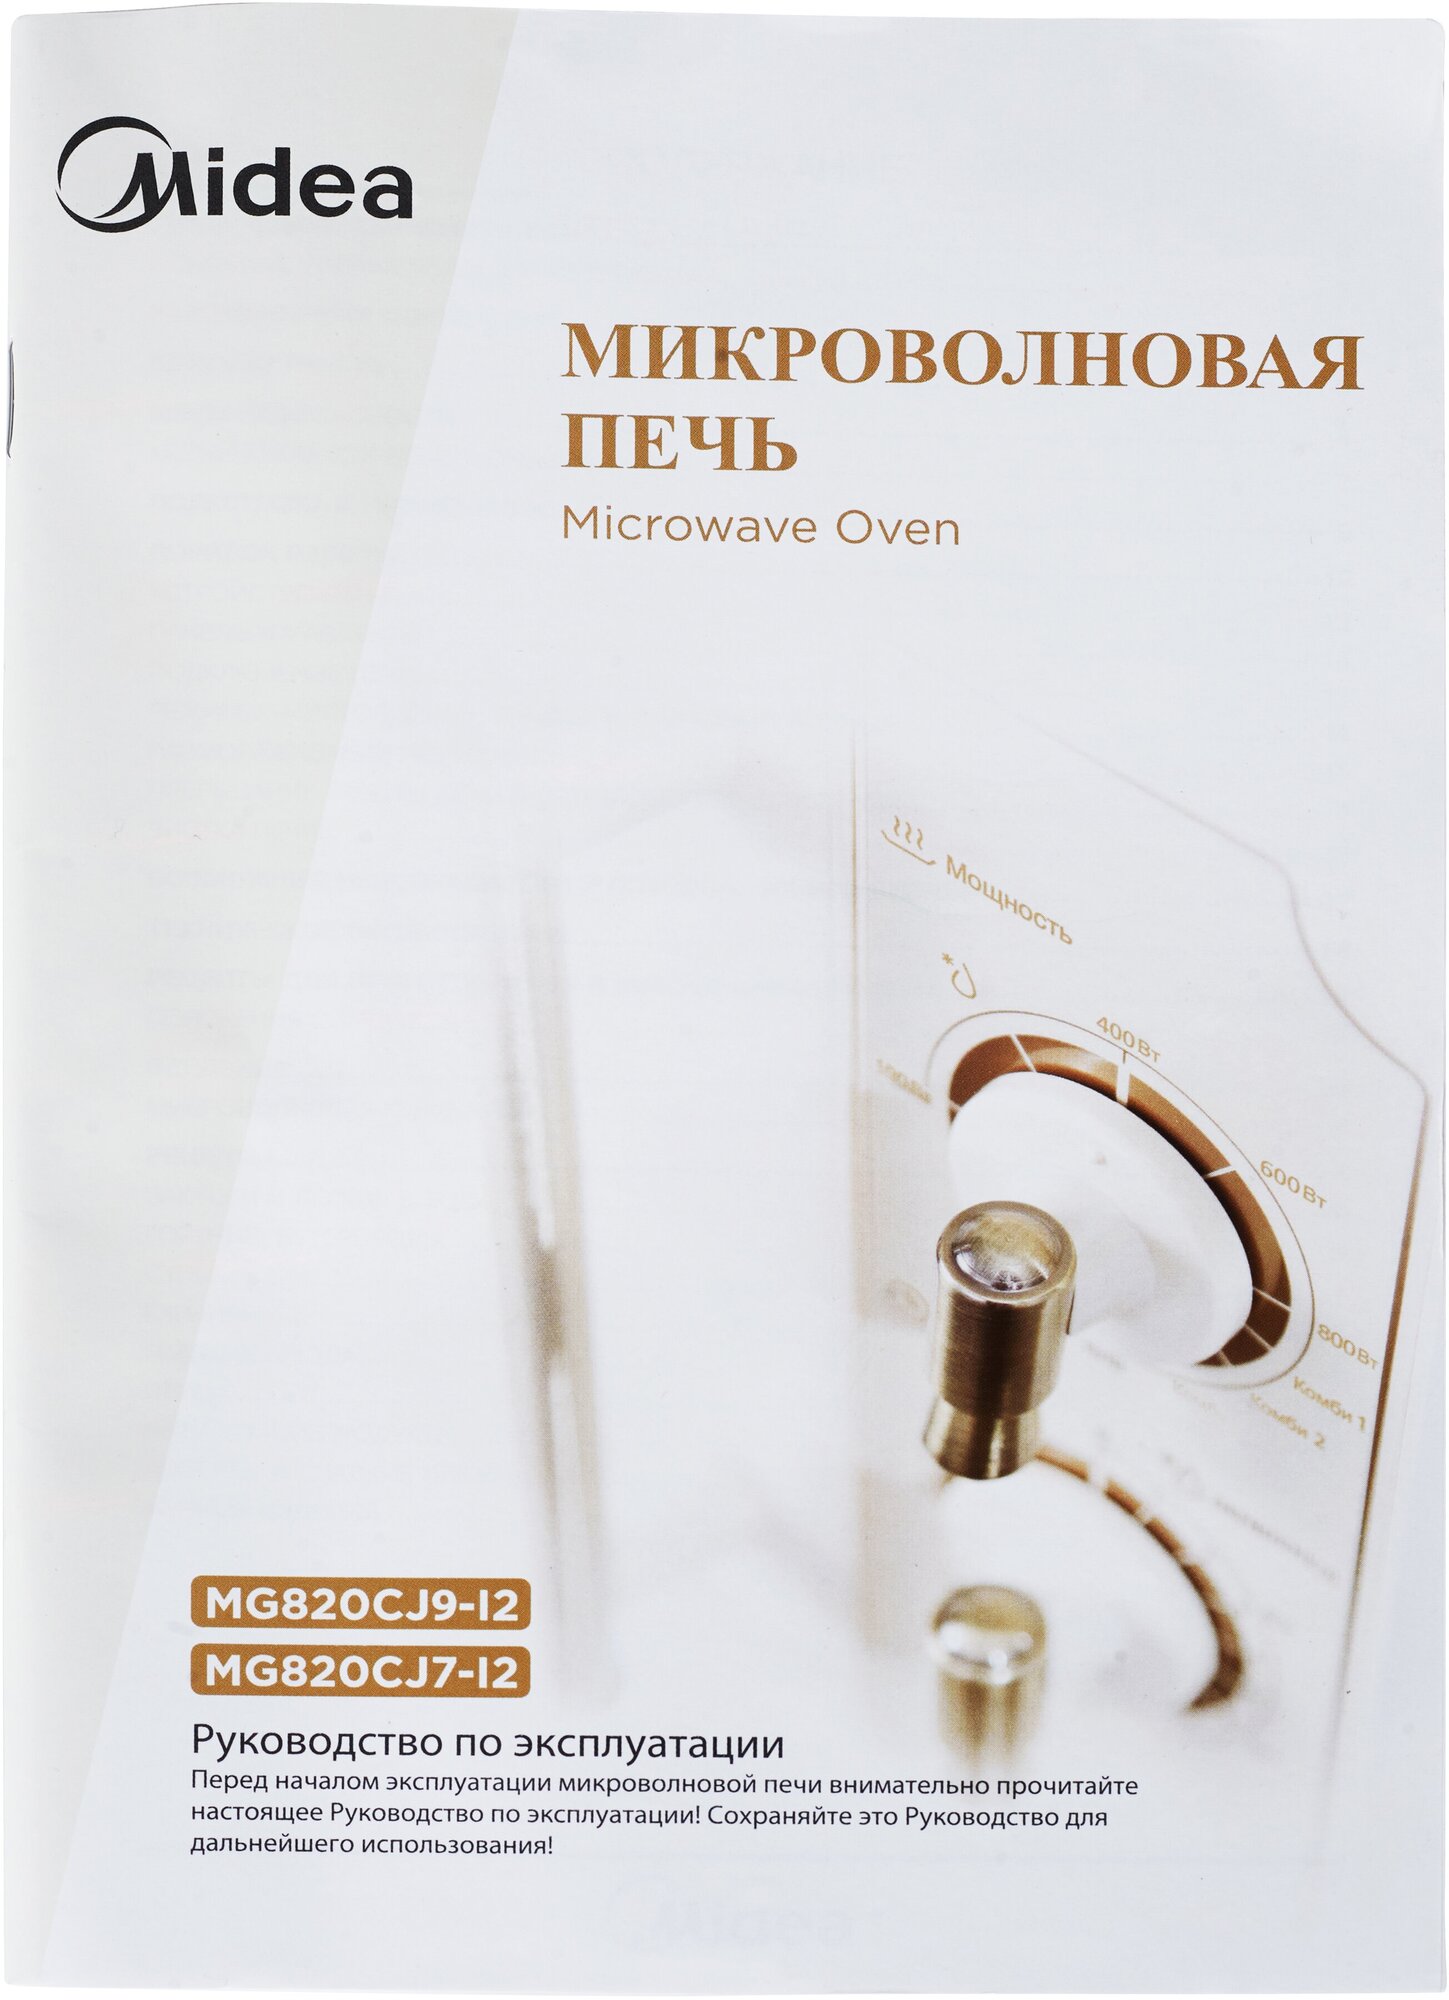 Микроволновая печь Midea MG820CJ9-I2, ретро, слоновая кость